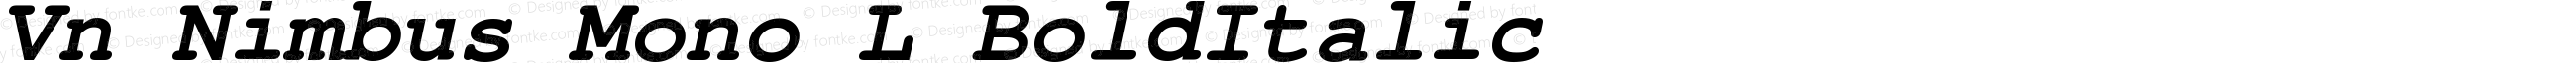 Vn Nimbus Mono L Bold Italic